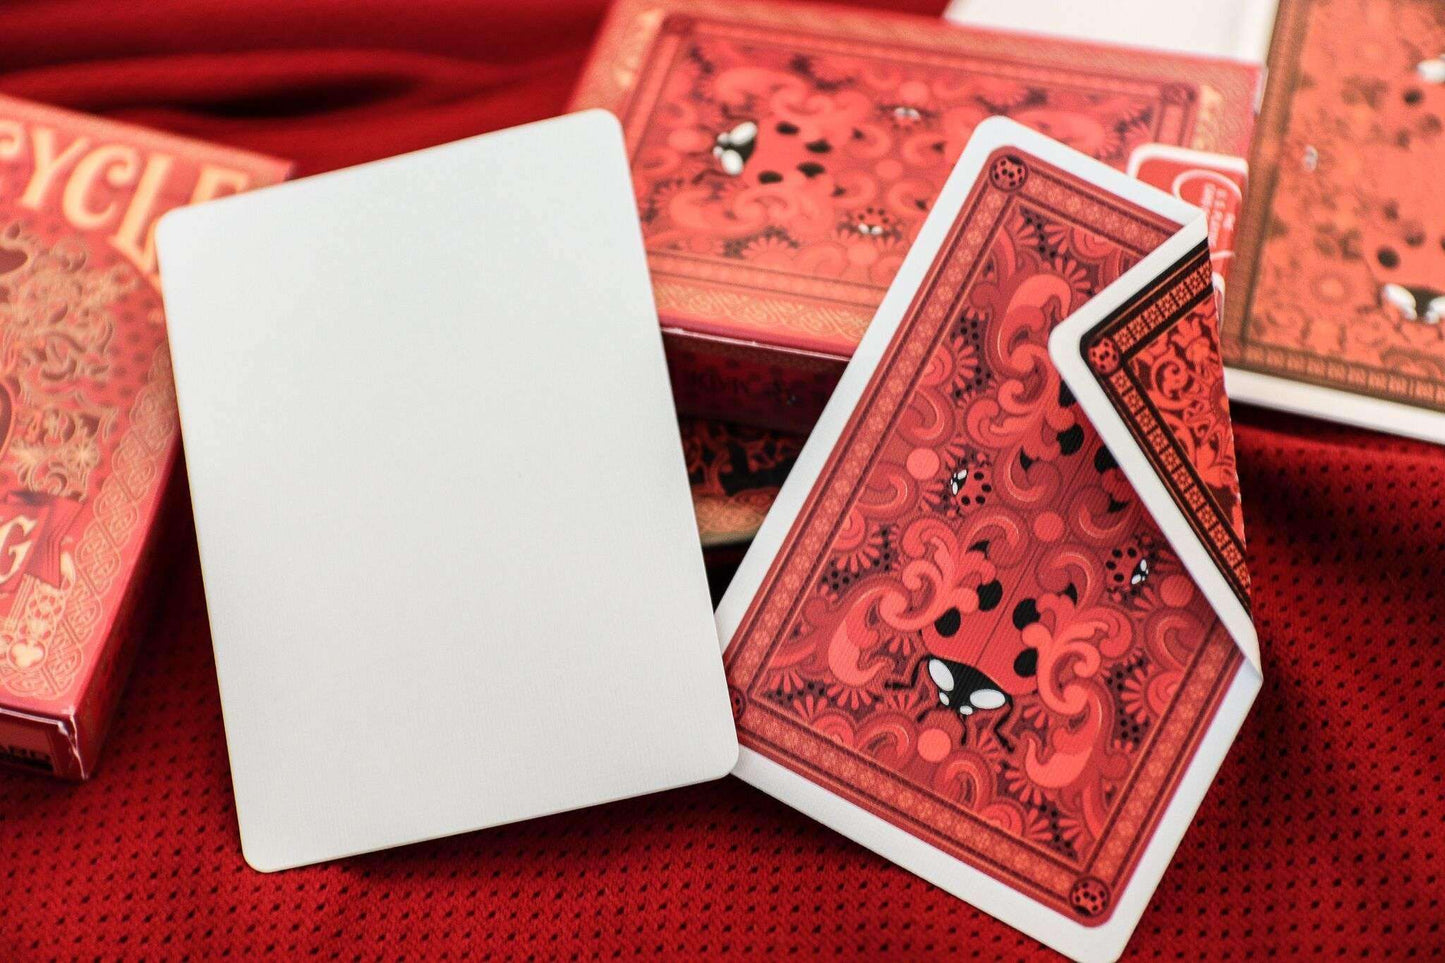 PlayingCardDecks.com-Ladybug Bicycle Gilded Playing Cards